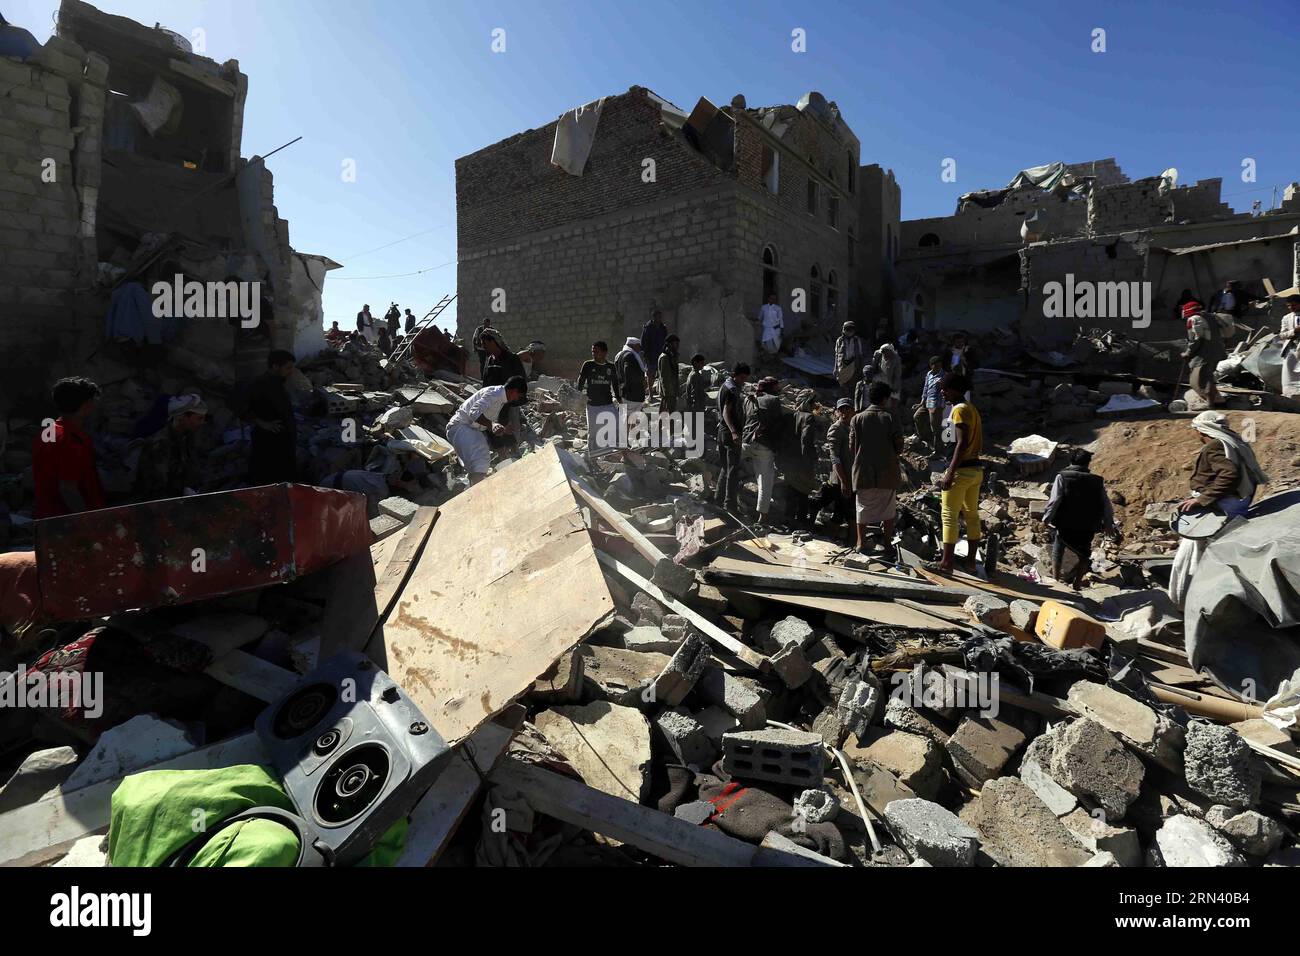 (150501)-- SANAA, 1. Mai 2015 -- Menschen räumen Schutt, nachdem ein Wohnviertel am 1. Mai 2015 von Kampfflugzeugen in Sanaa, Jemen, getroffen wurde. Mindestens 21 Zivilisten wurden getötet, als ein nächtlicher Luftangriff von saudisch geführten Koalitionstruppen sein Ziel in der jemenitischen Hauptstadt Sanaa verirrte und ein bevölkertes Wohnviertel traf, sagten Mediziner und Bewohner Xinhua am Freitag. )(bxq) JEMEN-SANAA-LUFTANGRIFF HanixAli PUBLICATIONxNOTxINxCHN Sanaa 1. Mai 2015 BERÜHMTHEITEN räumen Schutt auf, nachdem in Sanaa Jemen AM 1. Mai 2015 Kampfflugzeuge mindestens 21 Zivilisten GETÖTET haben Stockfoto